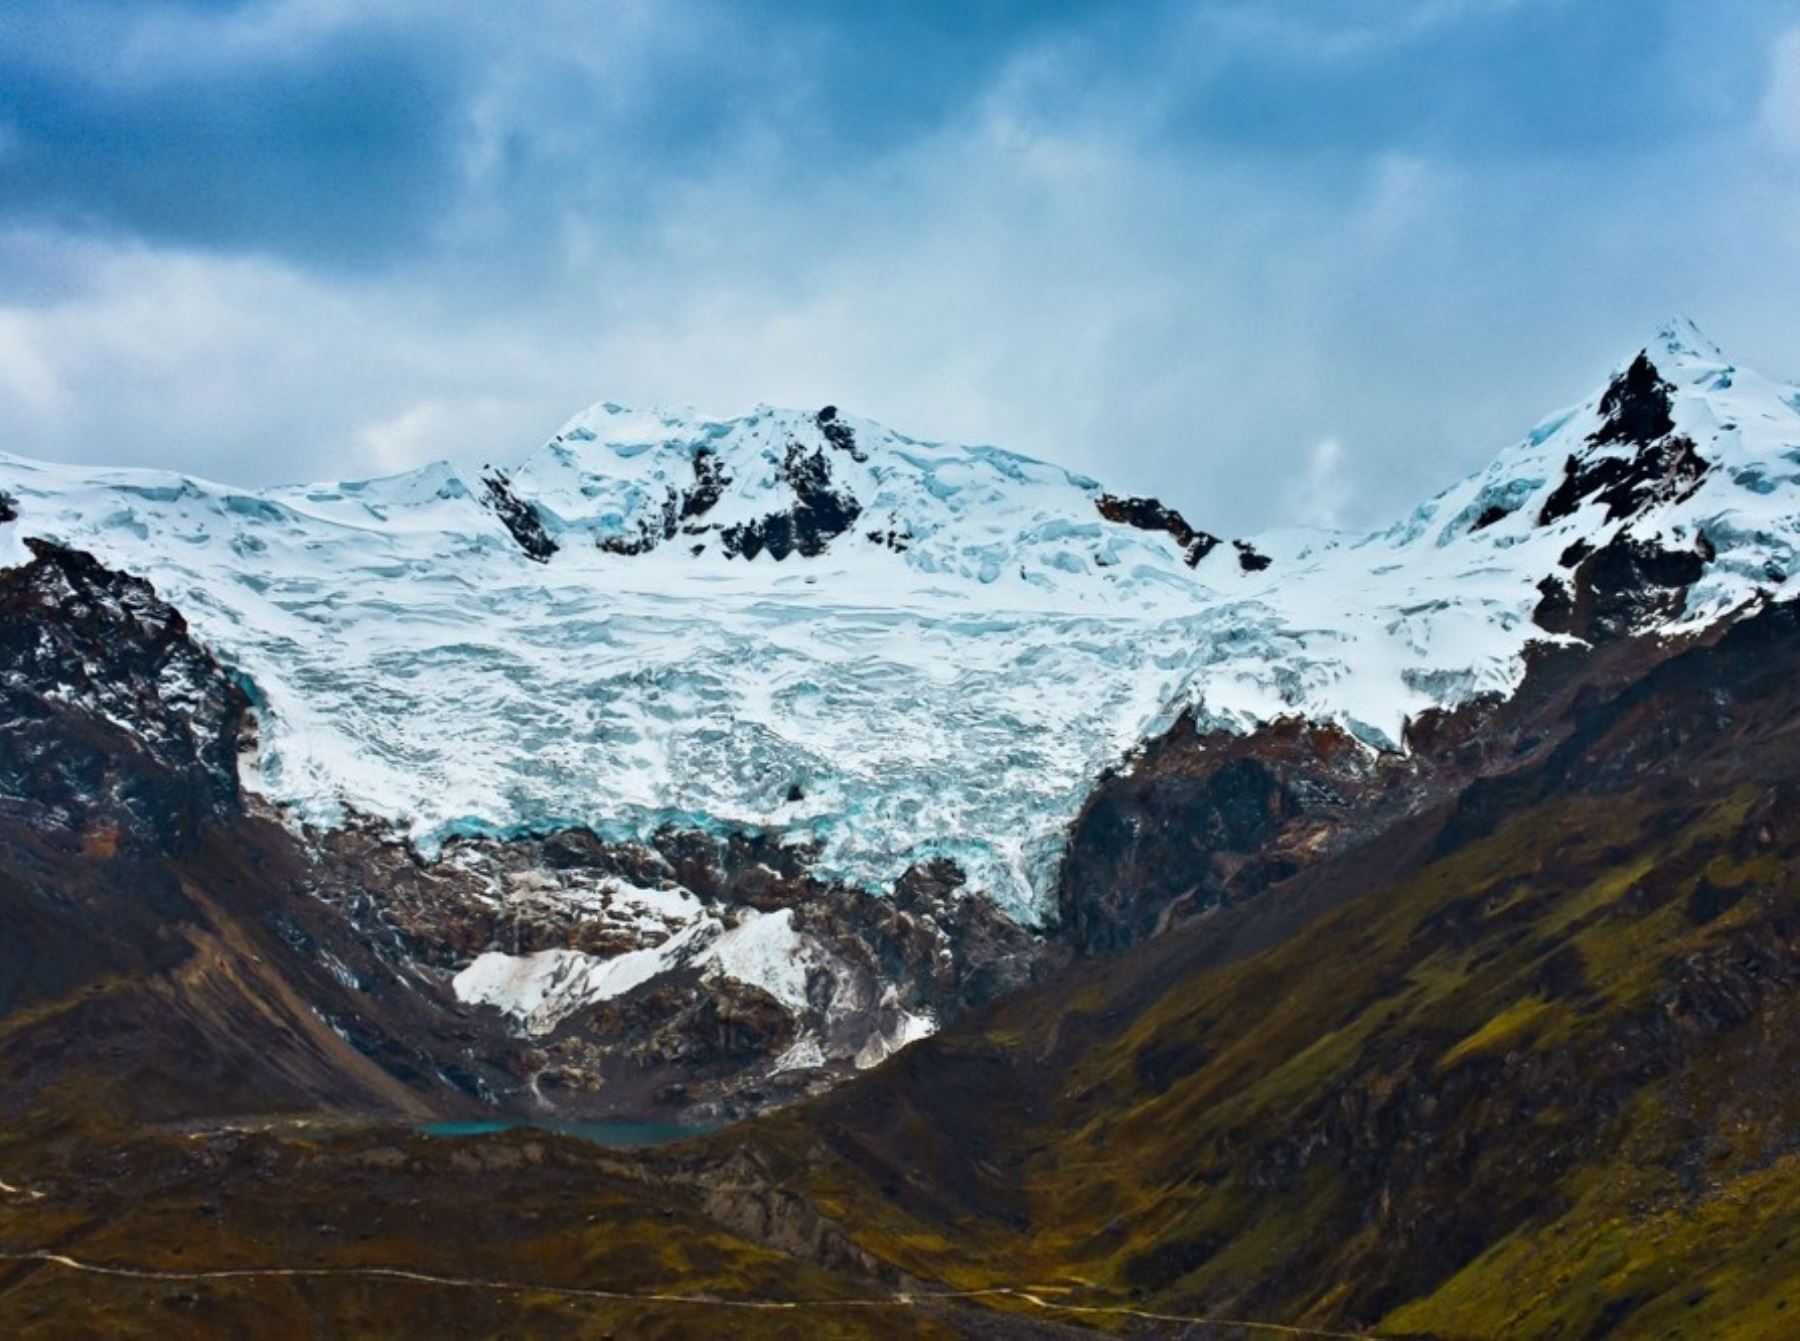 Investigadores del IGP realizarán un estudio científico y vigilarán el impacto climático en el glaciar Huaytapallana, nevado ubicado en la región Junín